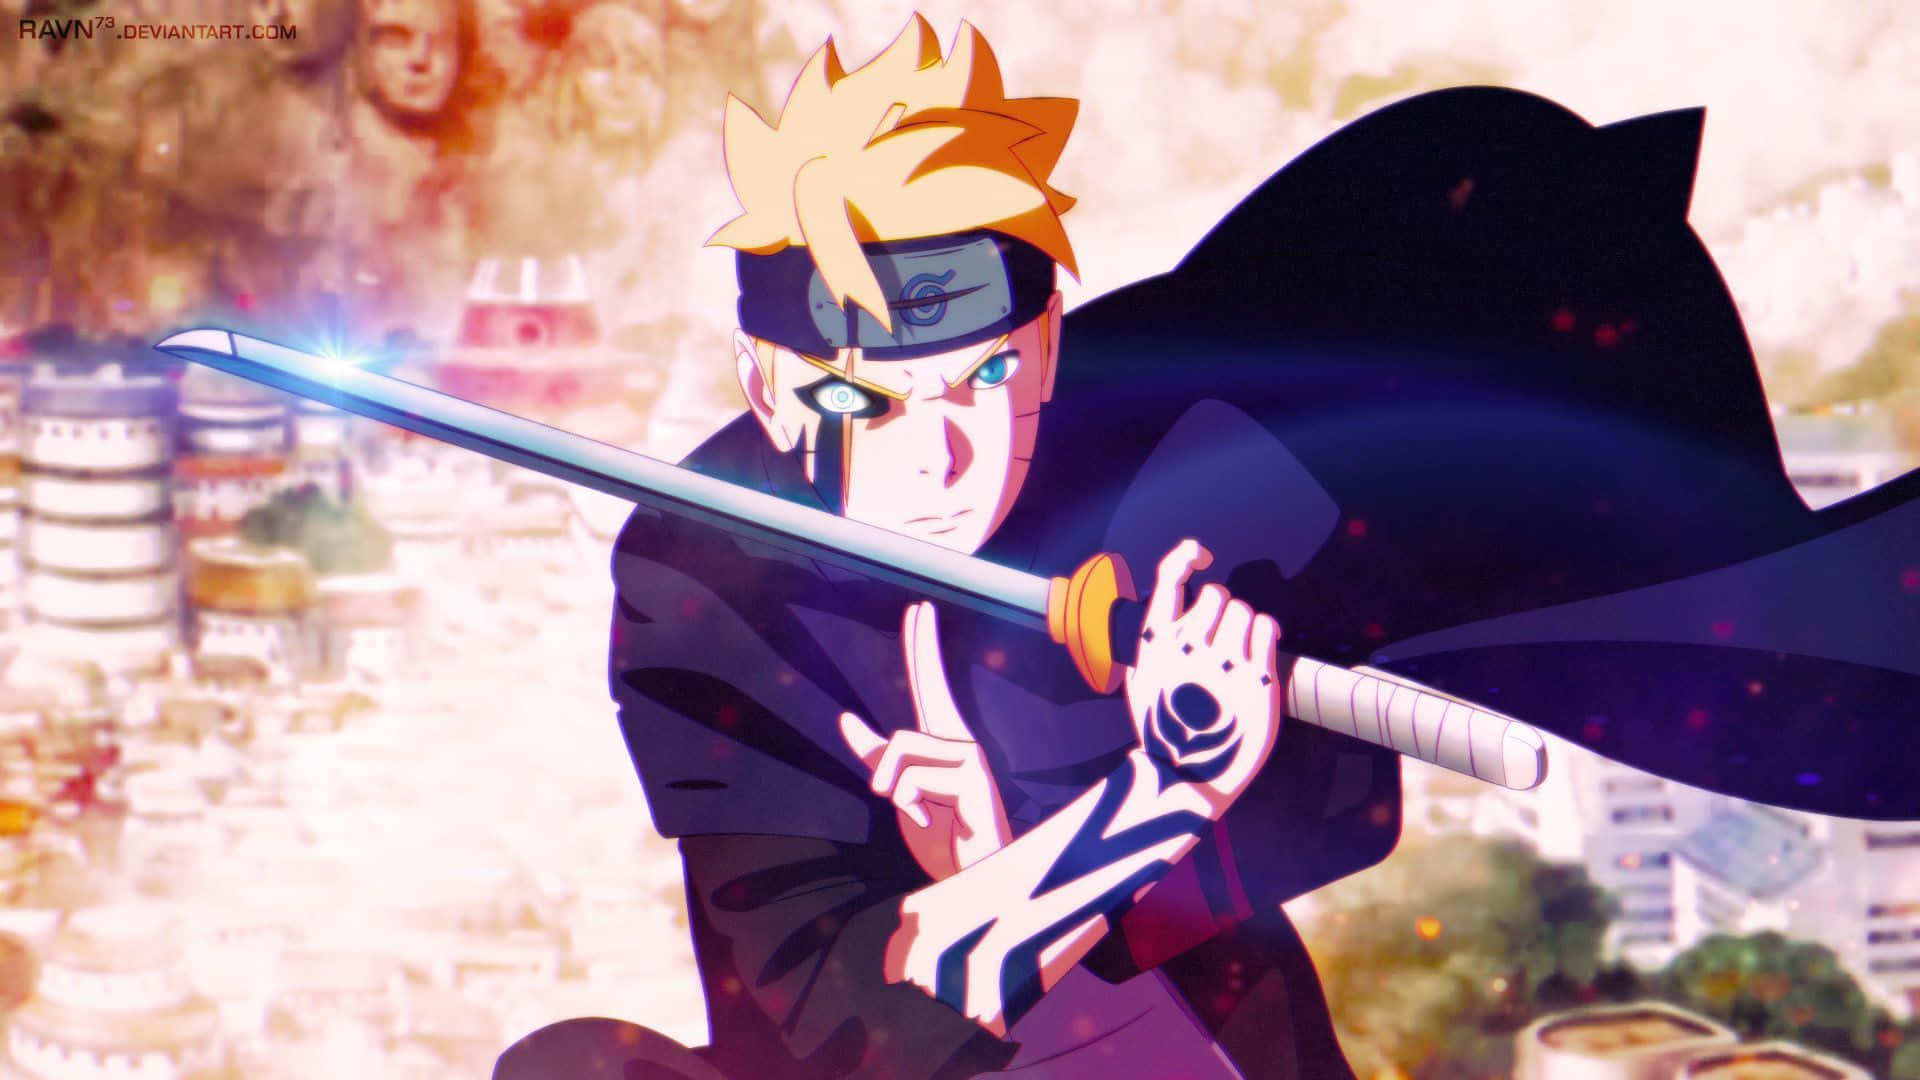 Naruto Uzumaki's son, Boruto fights for justice in Boruto: Naruto Next Generations Wallpaper